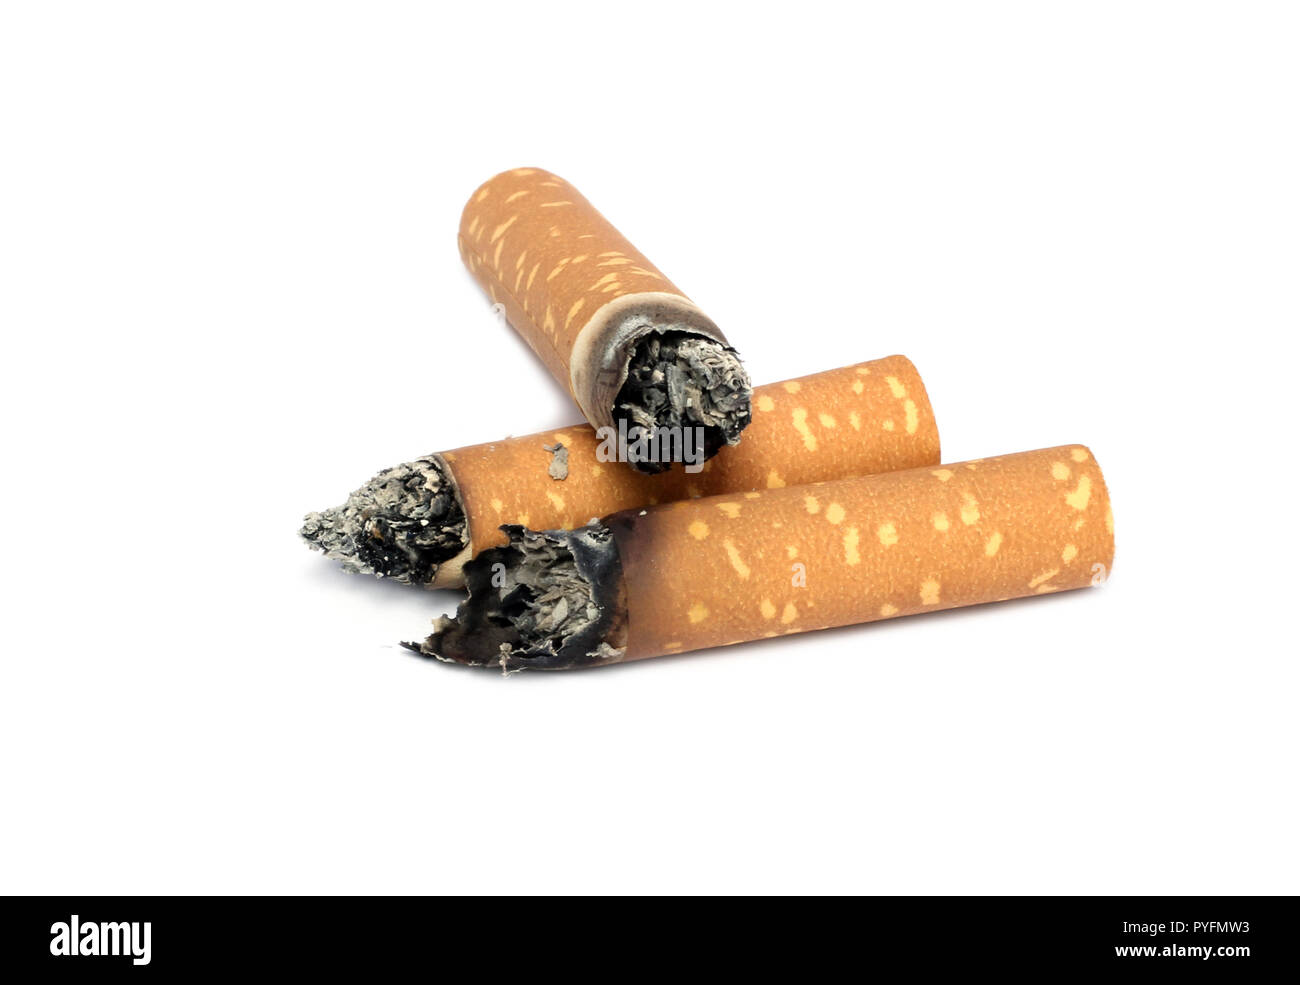 Sigaretta strappata immagini e fotografie stock ad alta risoluzione - Alamy